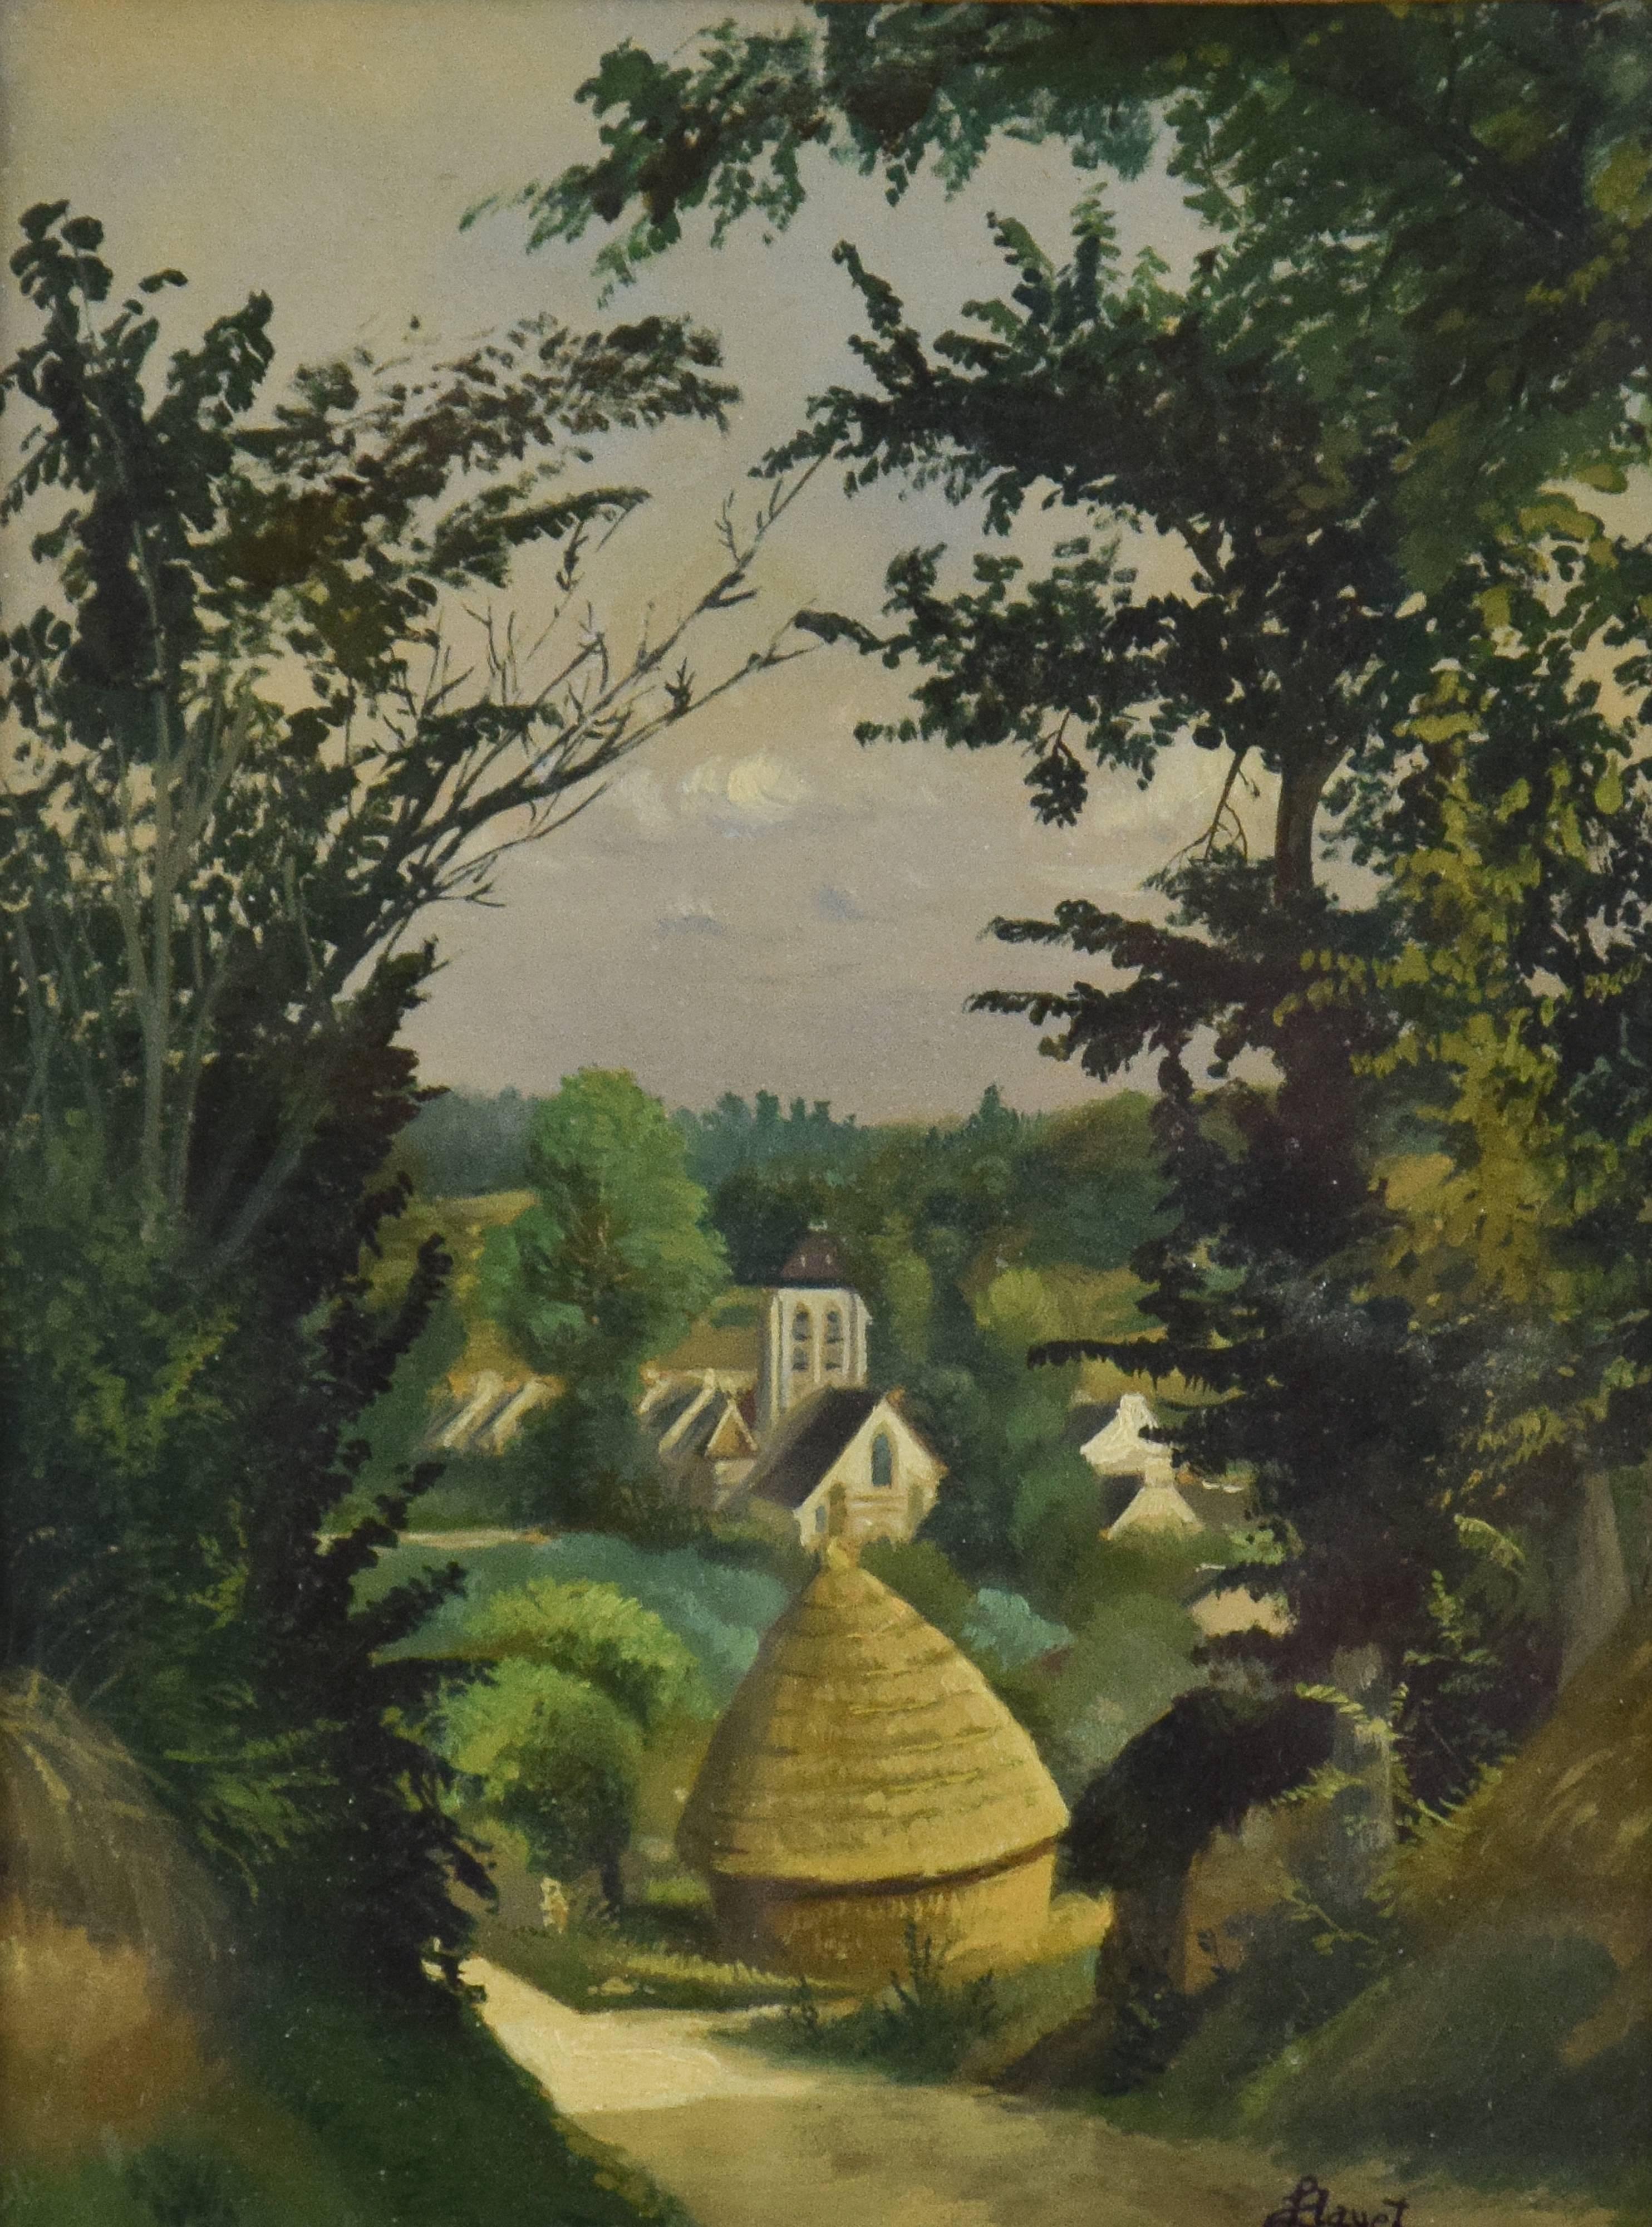 Figurative Painting Louis Hayet - Paysage de LOUIS HAYET - Art, peintre post-impressionniste français, paysage